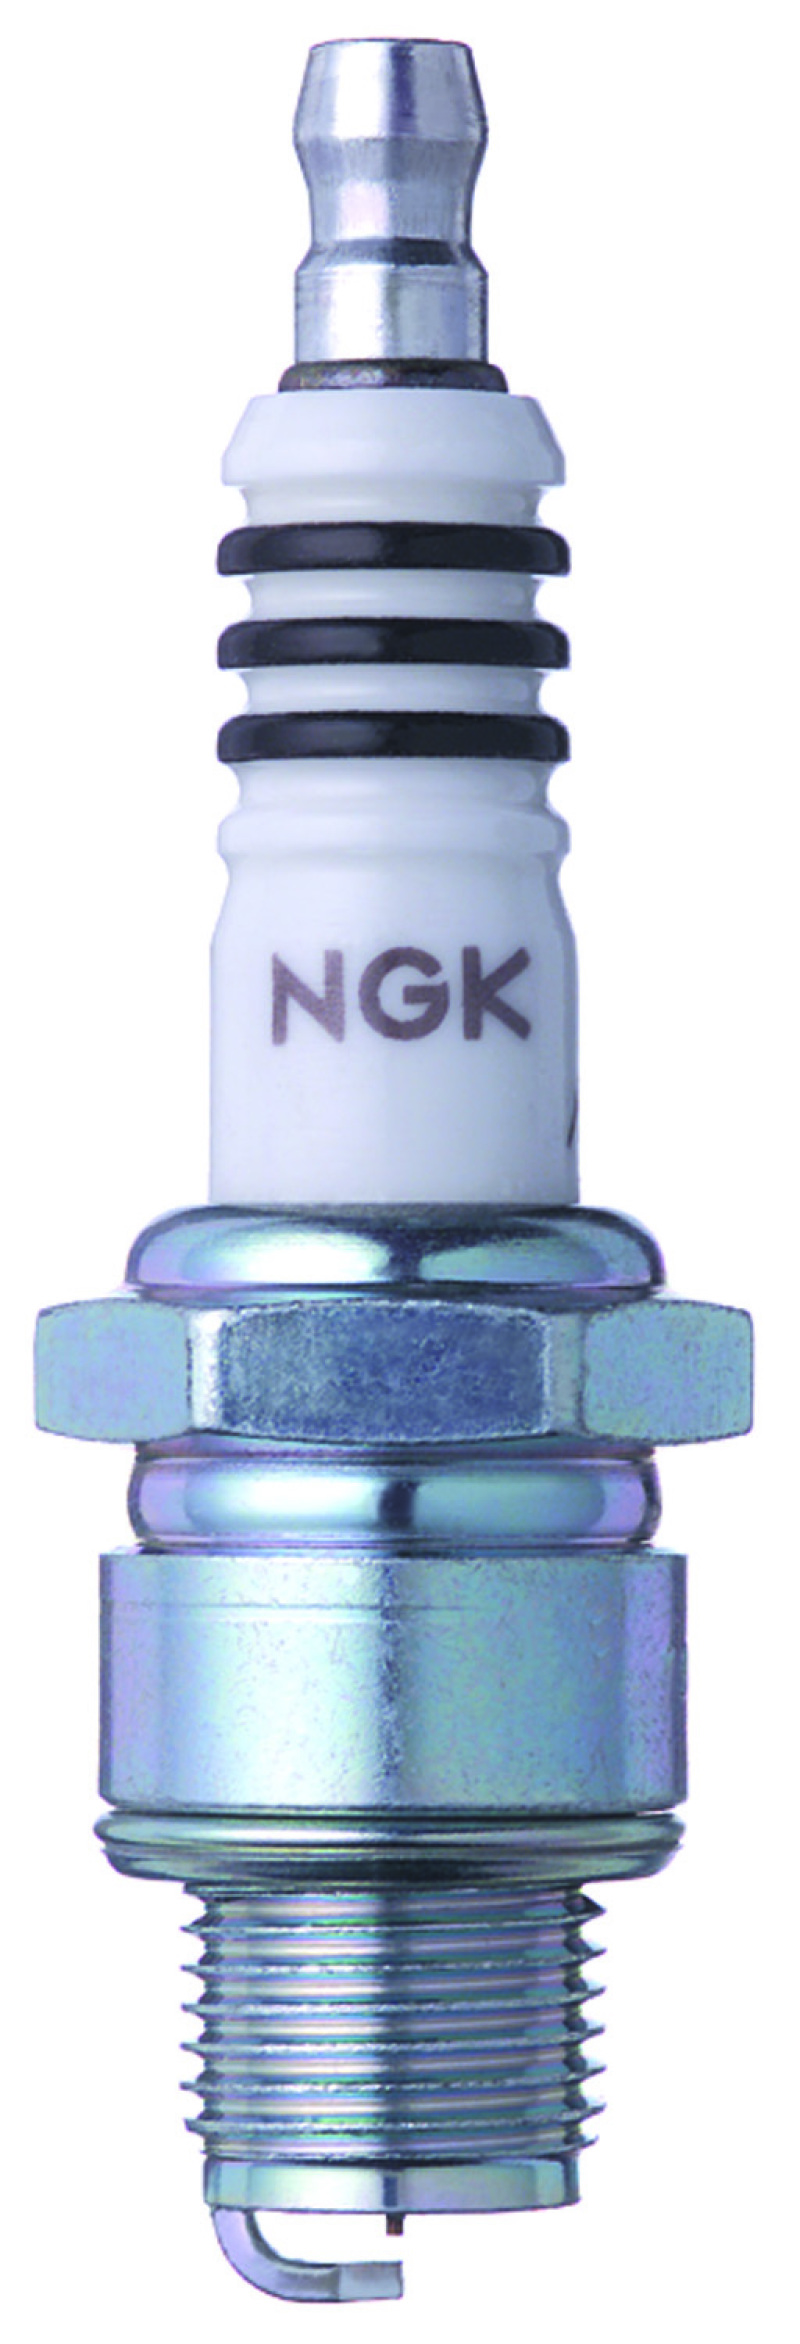 NGK Iridium IX Spark Plug Box of 4 (BR6HIX) - 3419